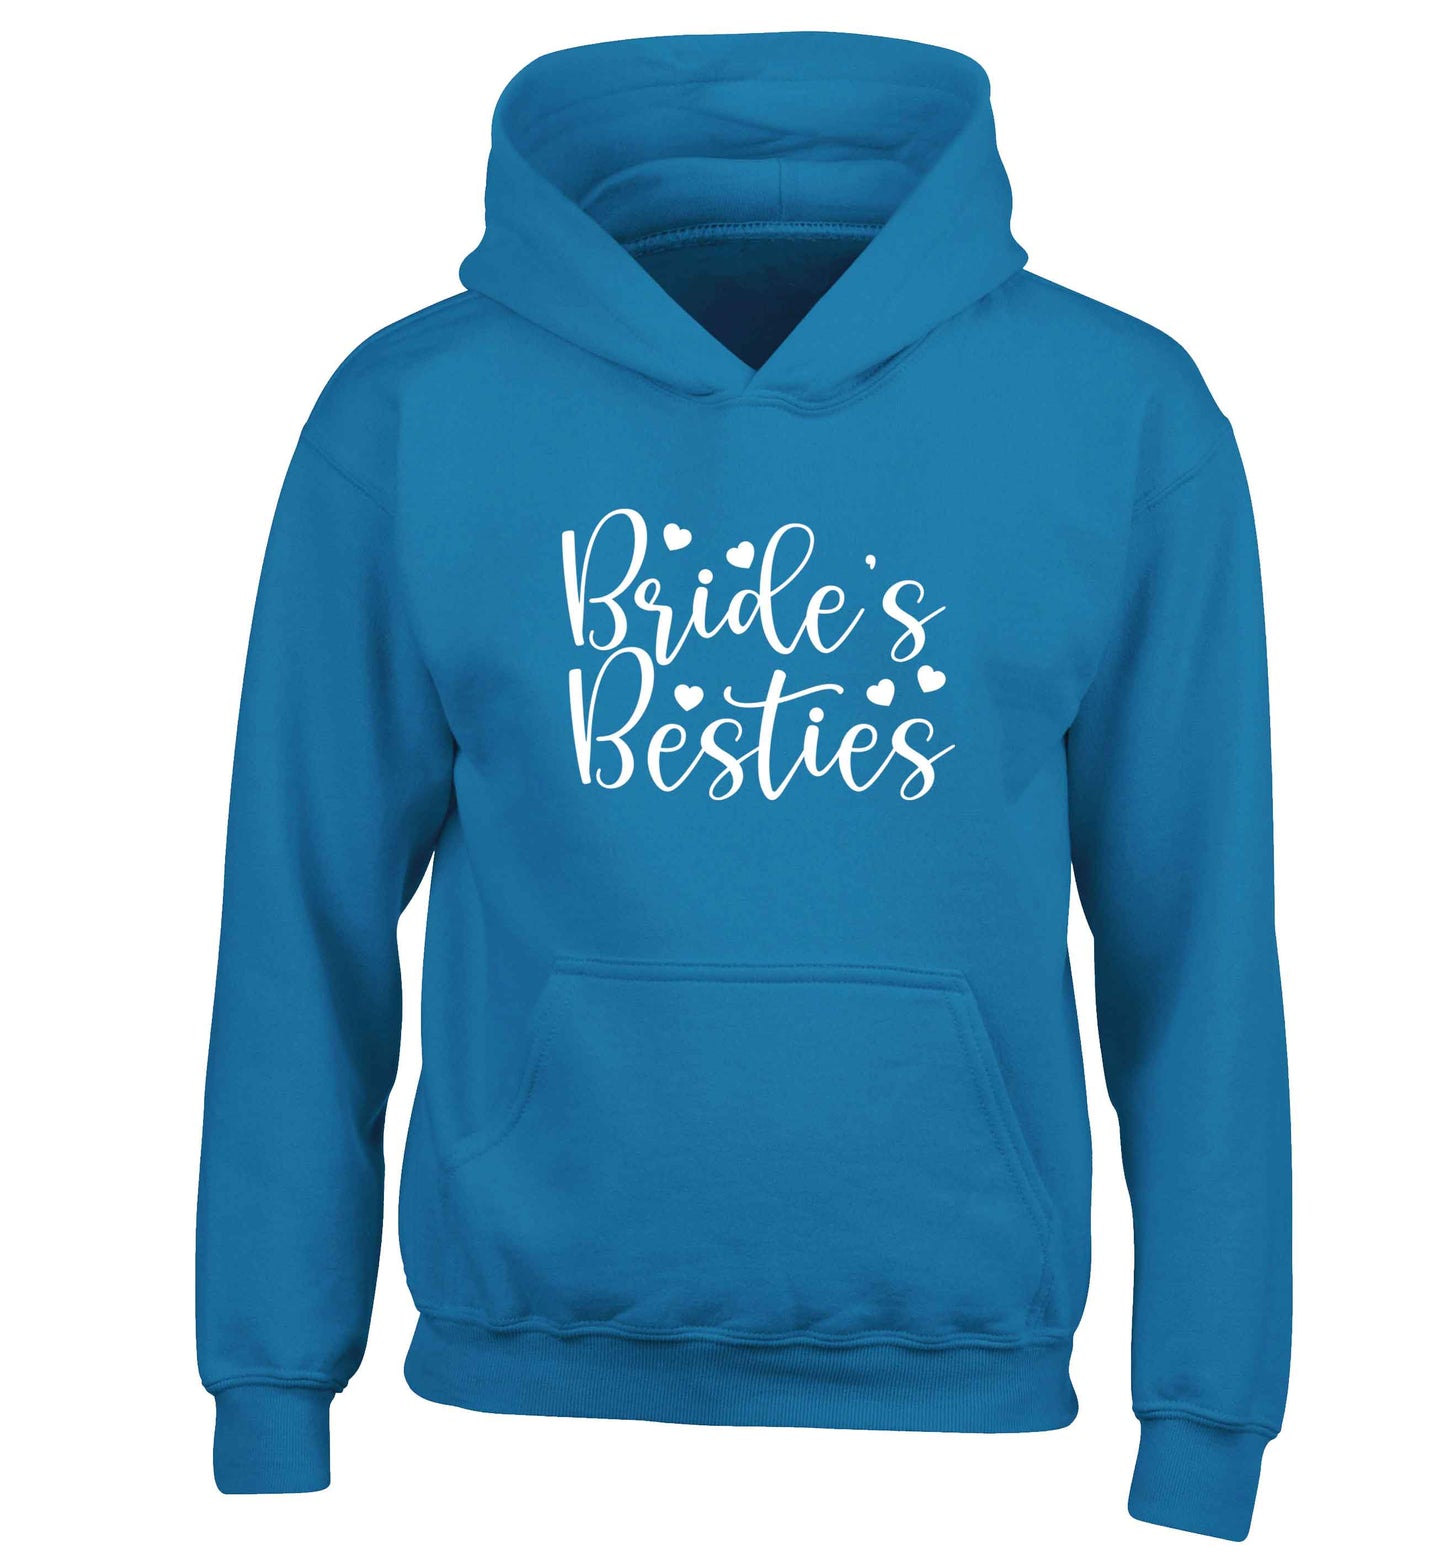 Brides besties children's blue hoodie 12-13 Years